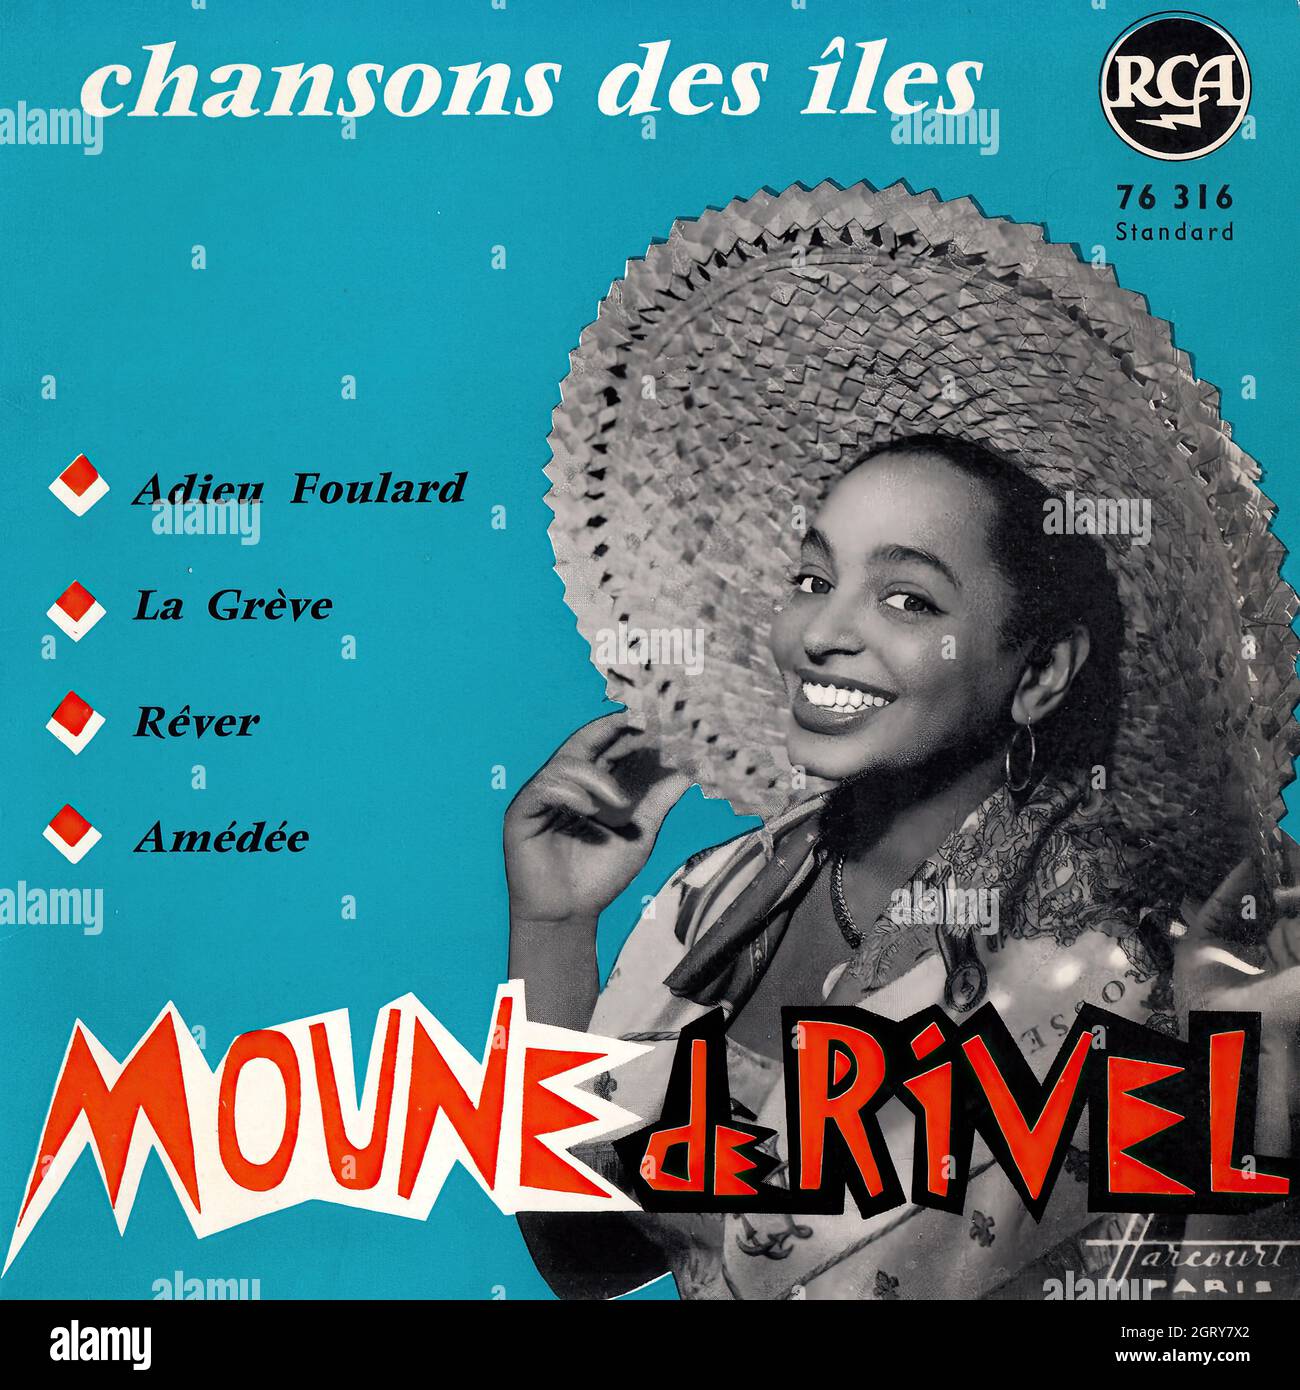 Moune De Rivel - Chansons des îles EP - Vintage Vinyl Record Cover Stock Photo